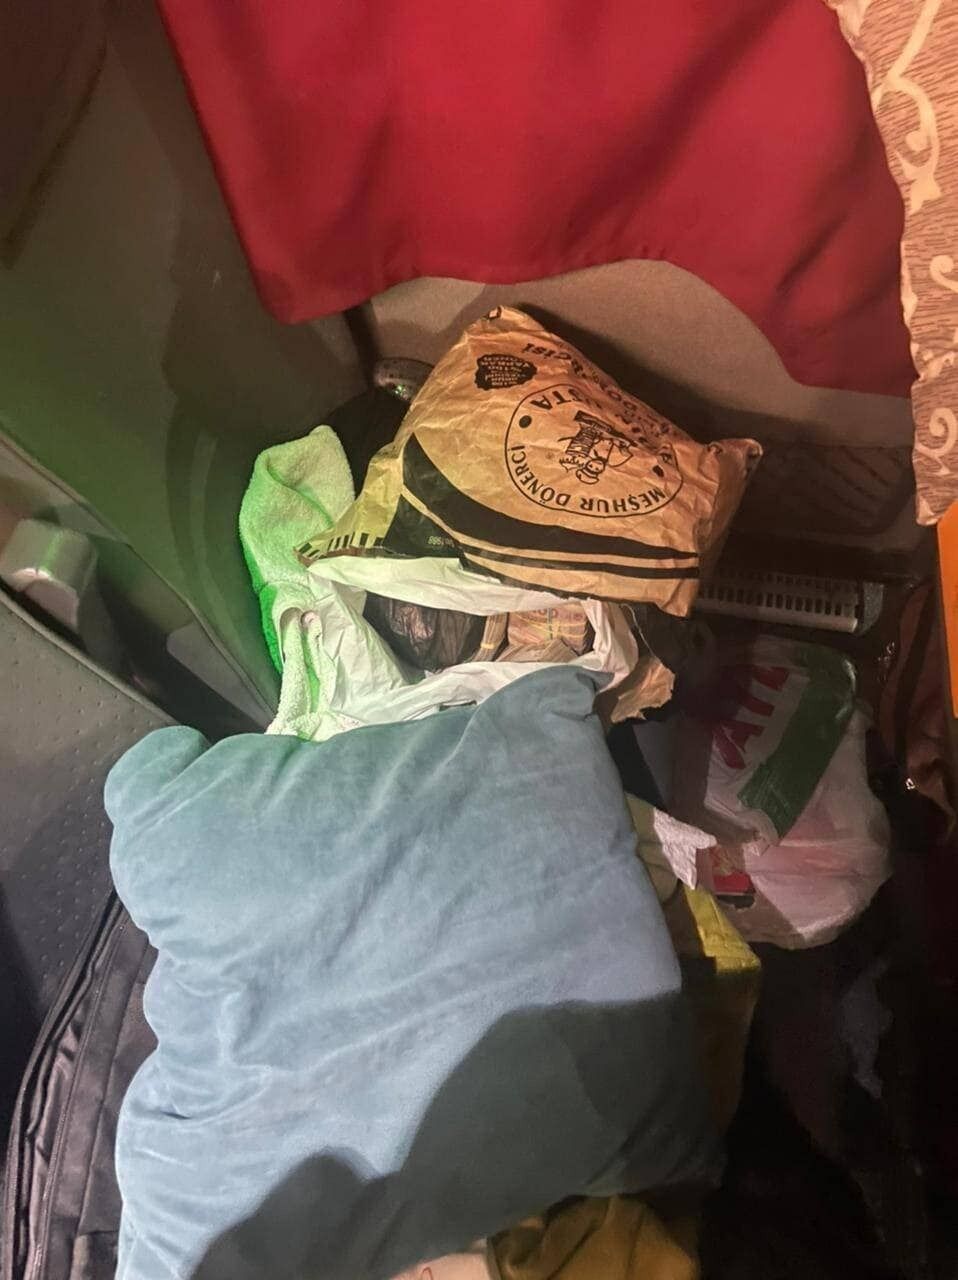 Миллион гривен под одеялом: водитель автобуса прятал нелегальные наличные - детали от ГПСУ